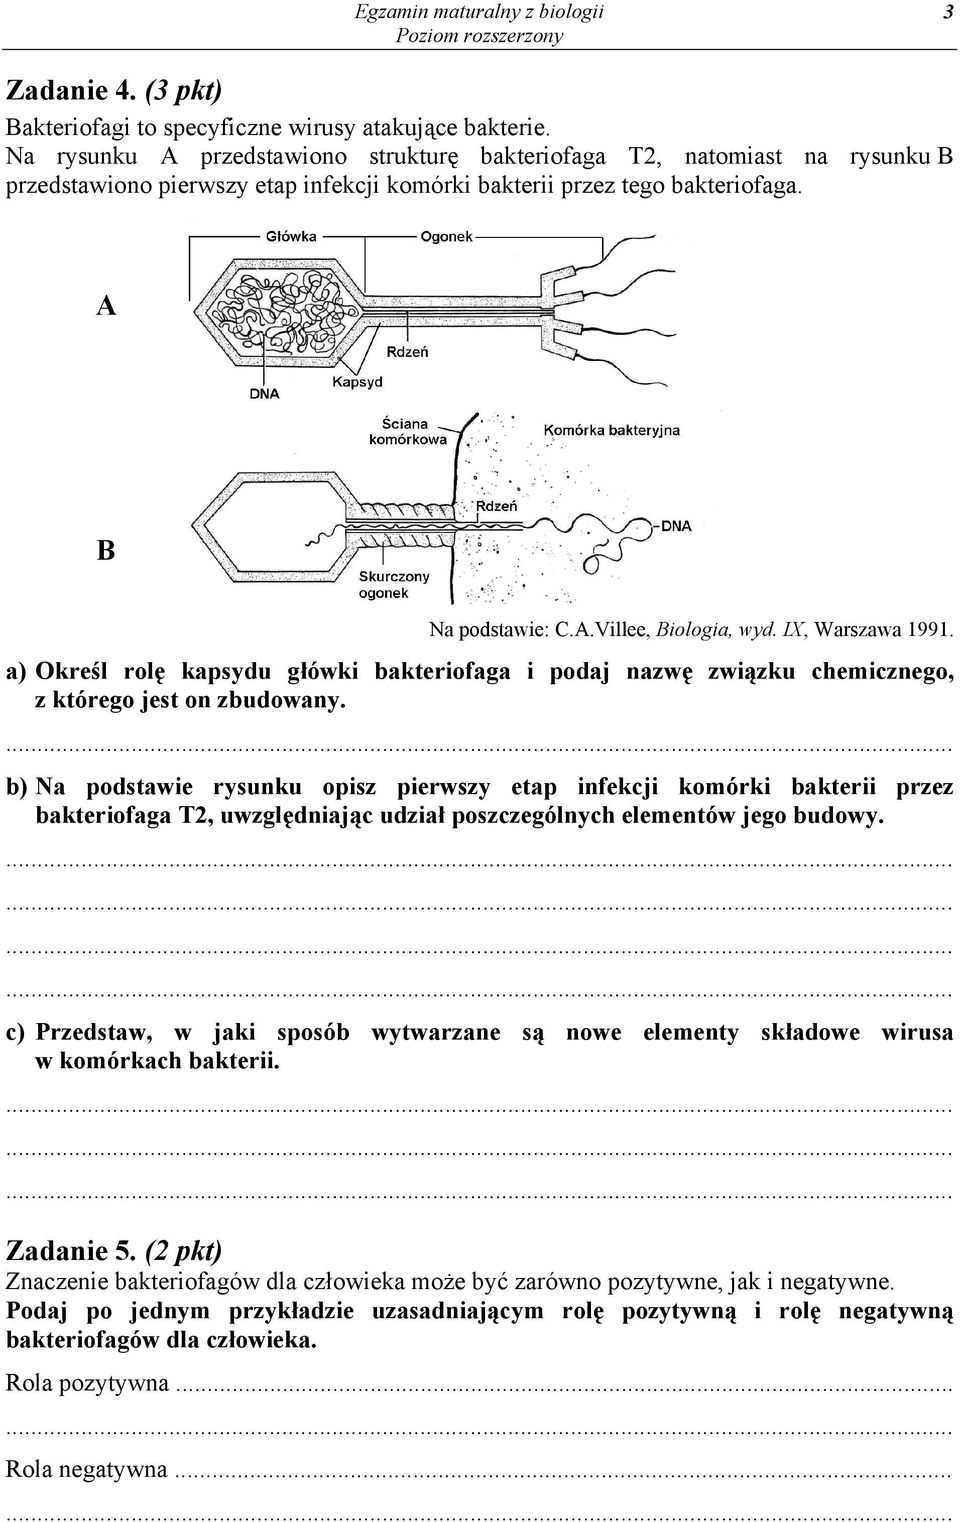 IX, Warszawa 1991. a) Określ rolę kapsydu główki bakteriofaga i podaj nazwę związku chemicznego, z którego jest on zbudowany.